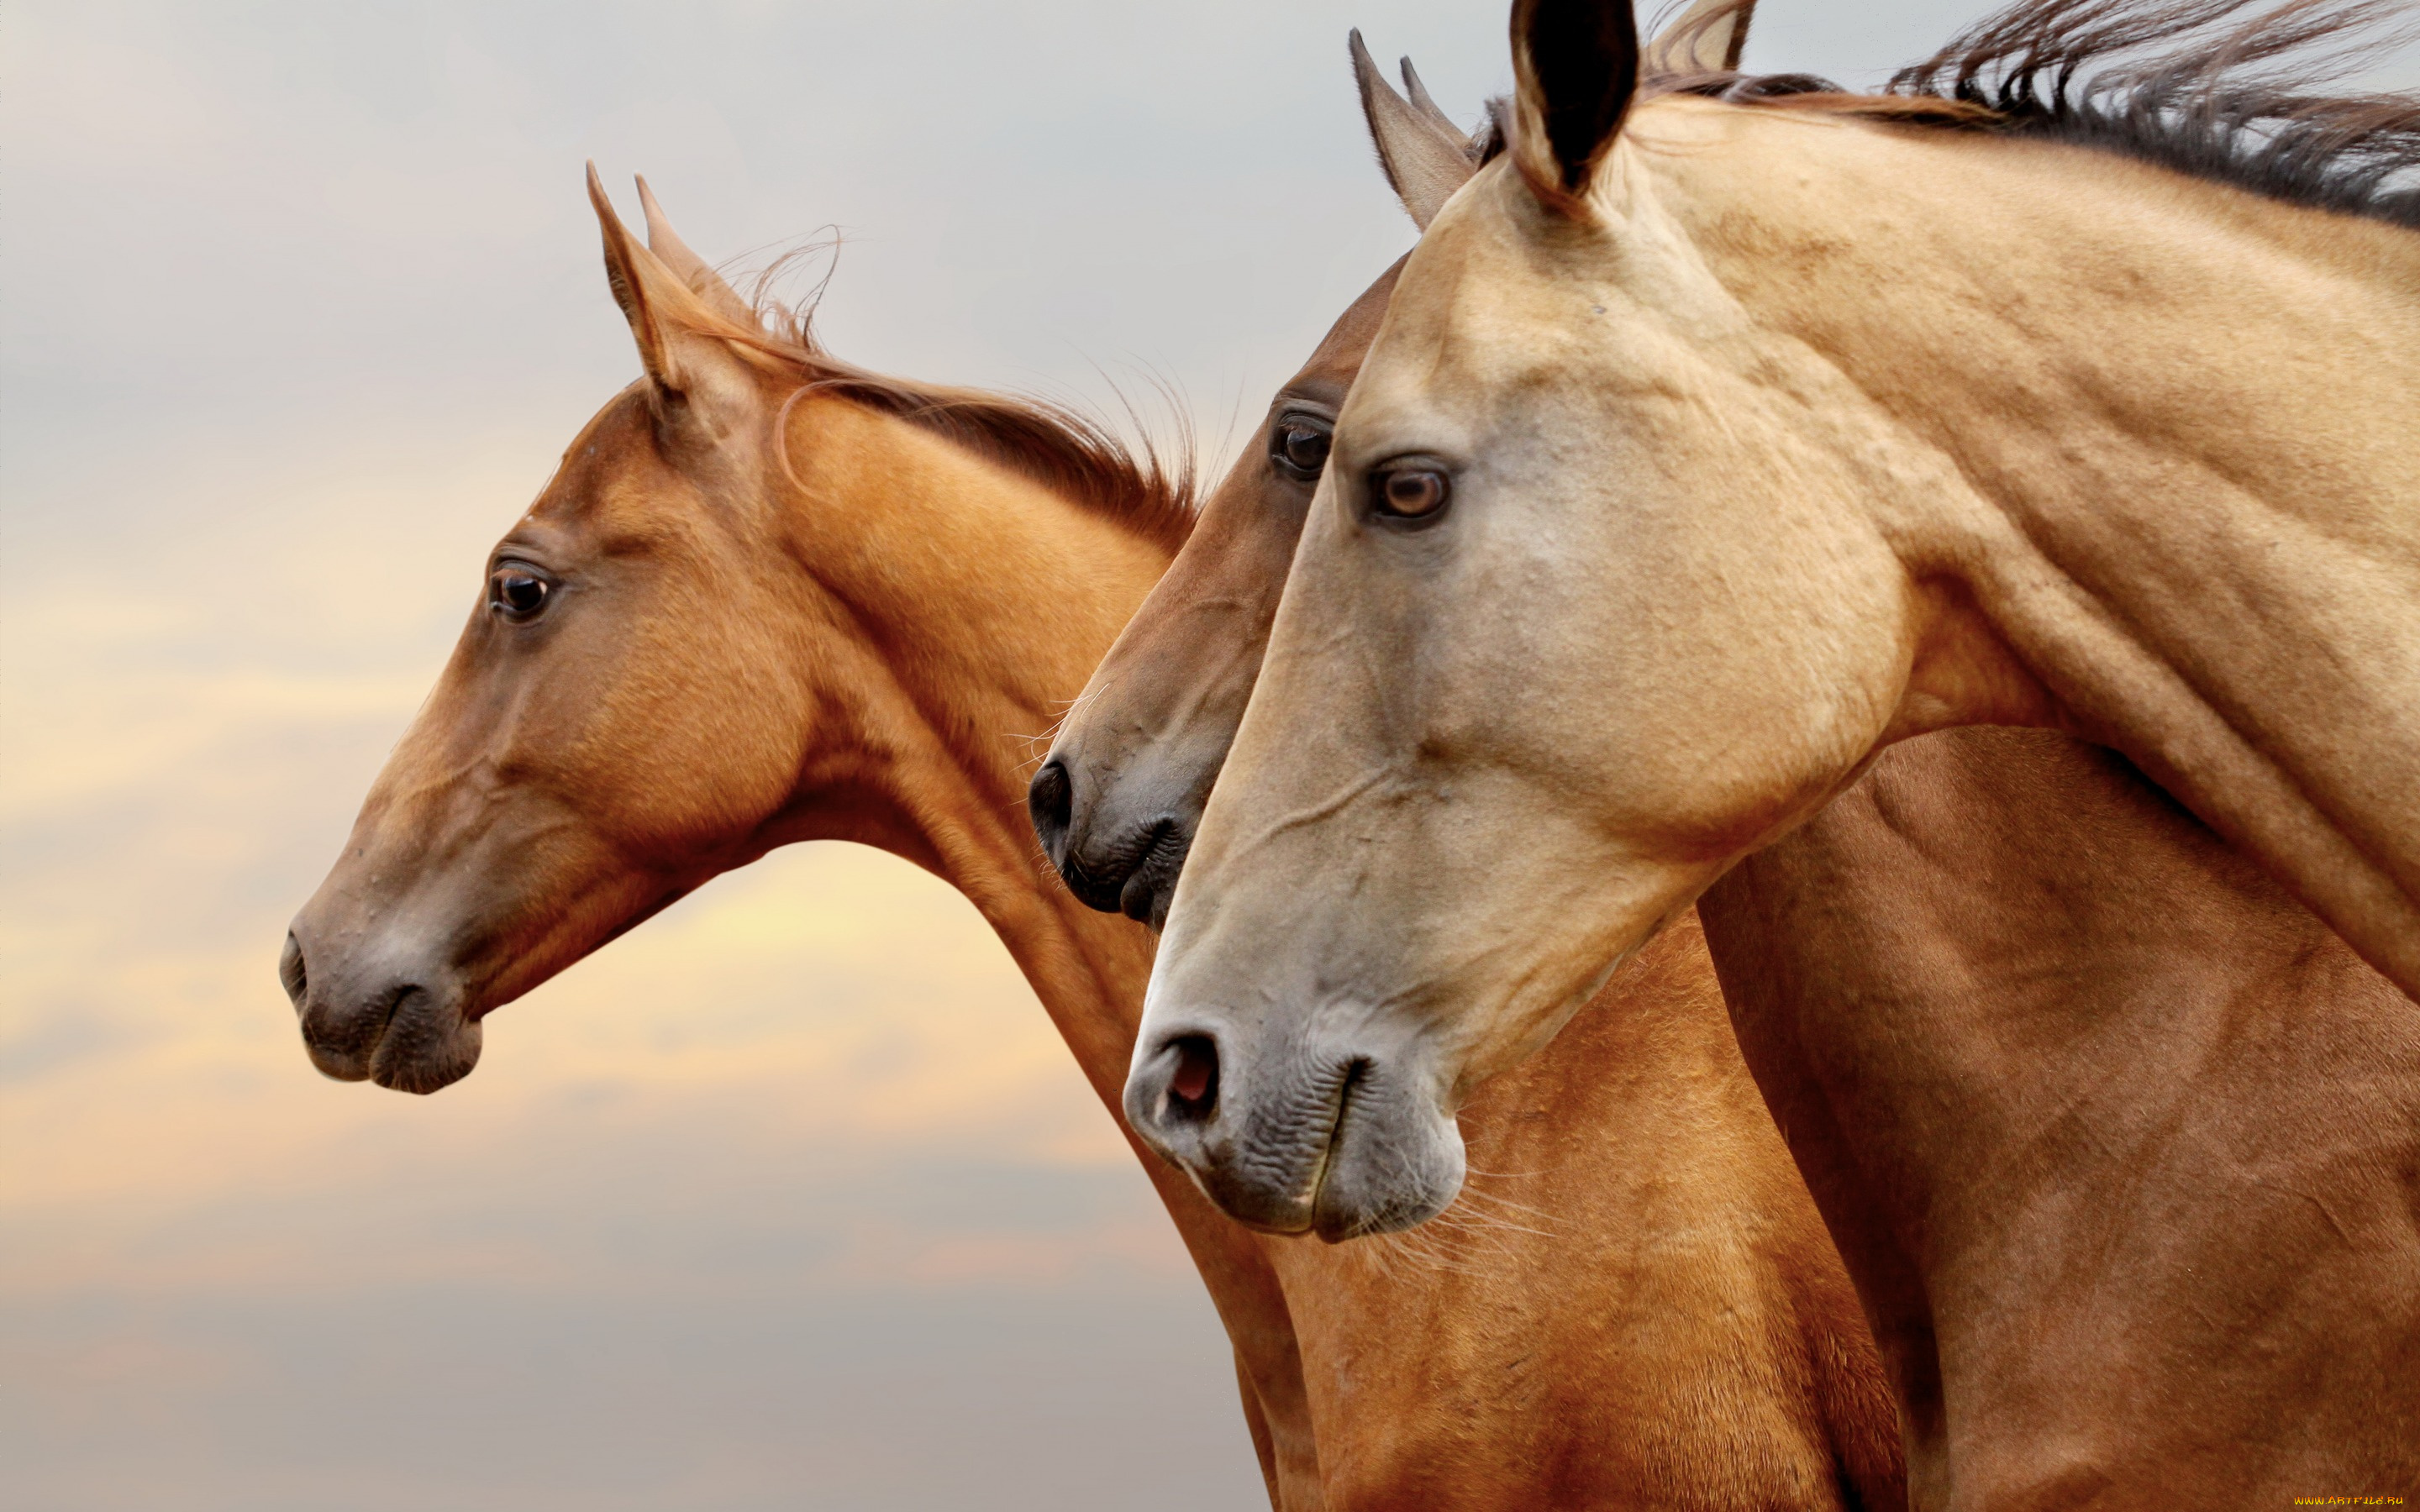 животные, лошади, кони, рыжие, коричневые, три, тройка, профиль, портрет, морды, глаза